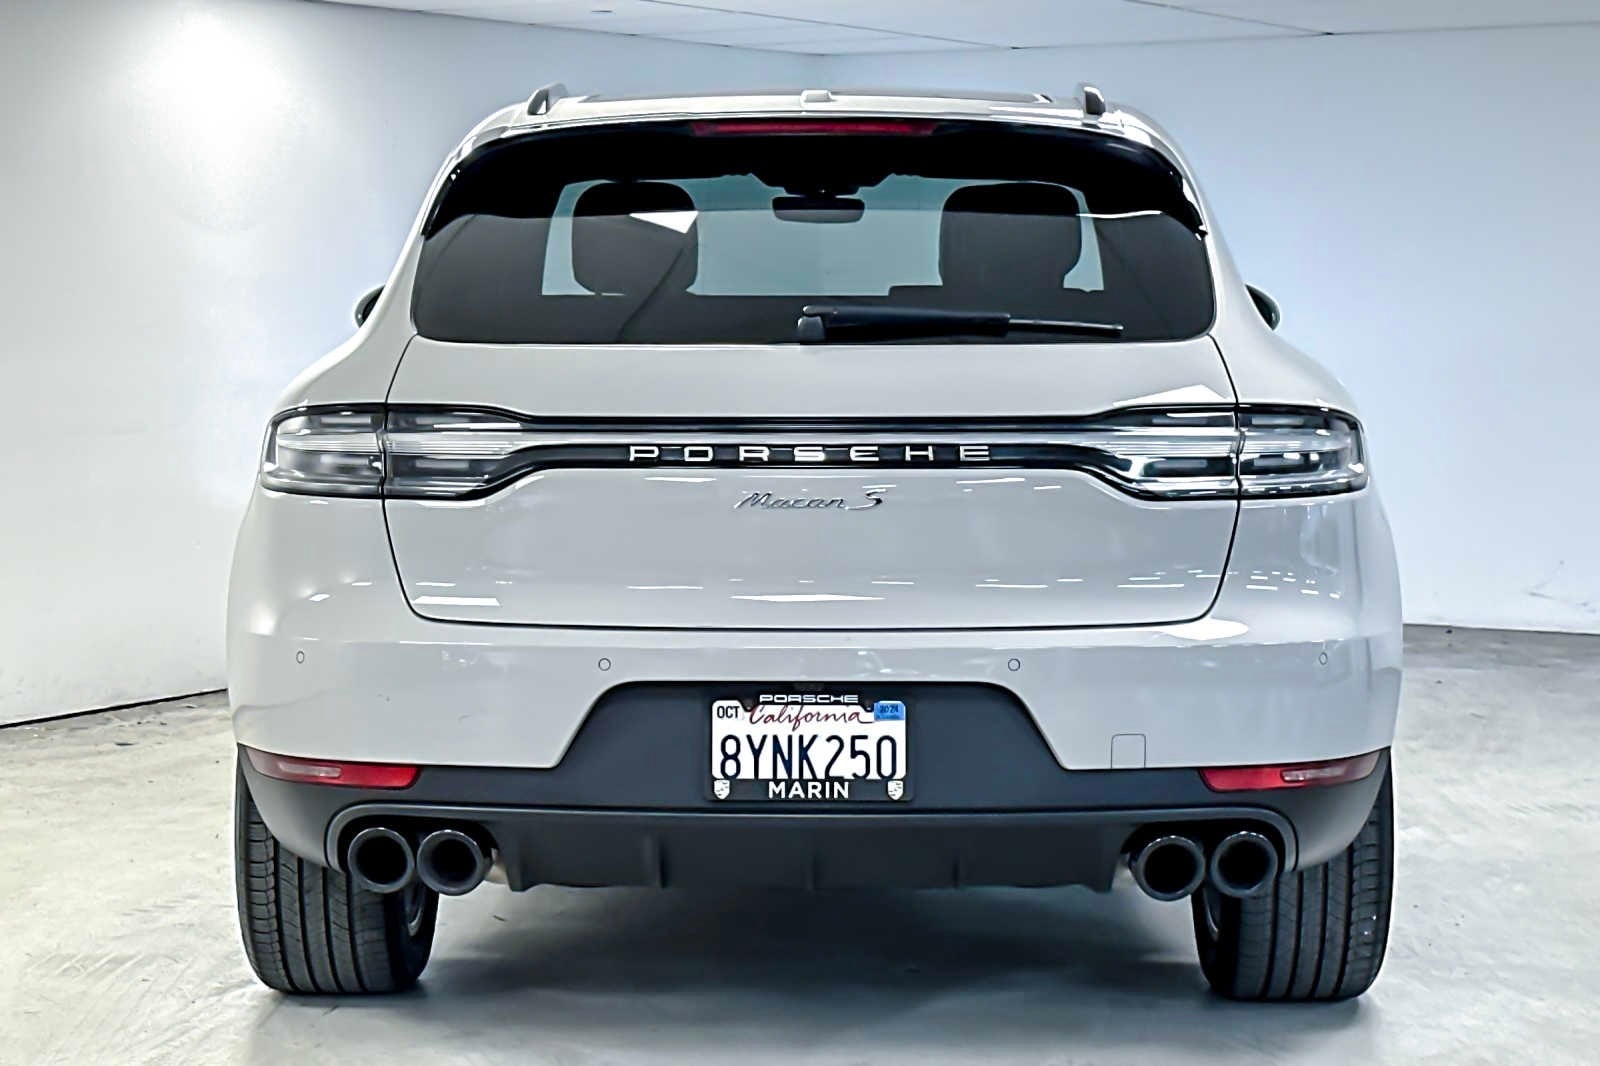 2021 Porsche Macan S